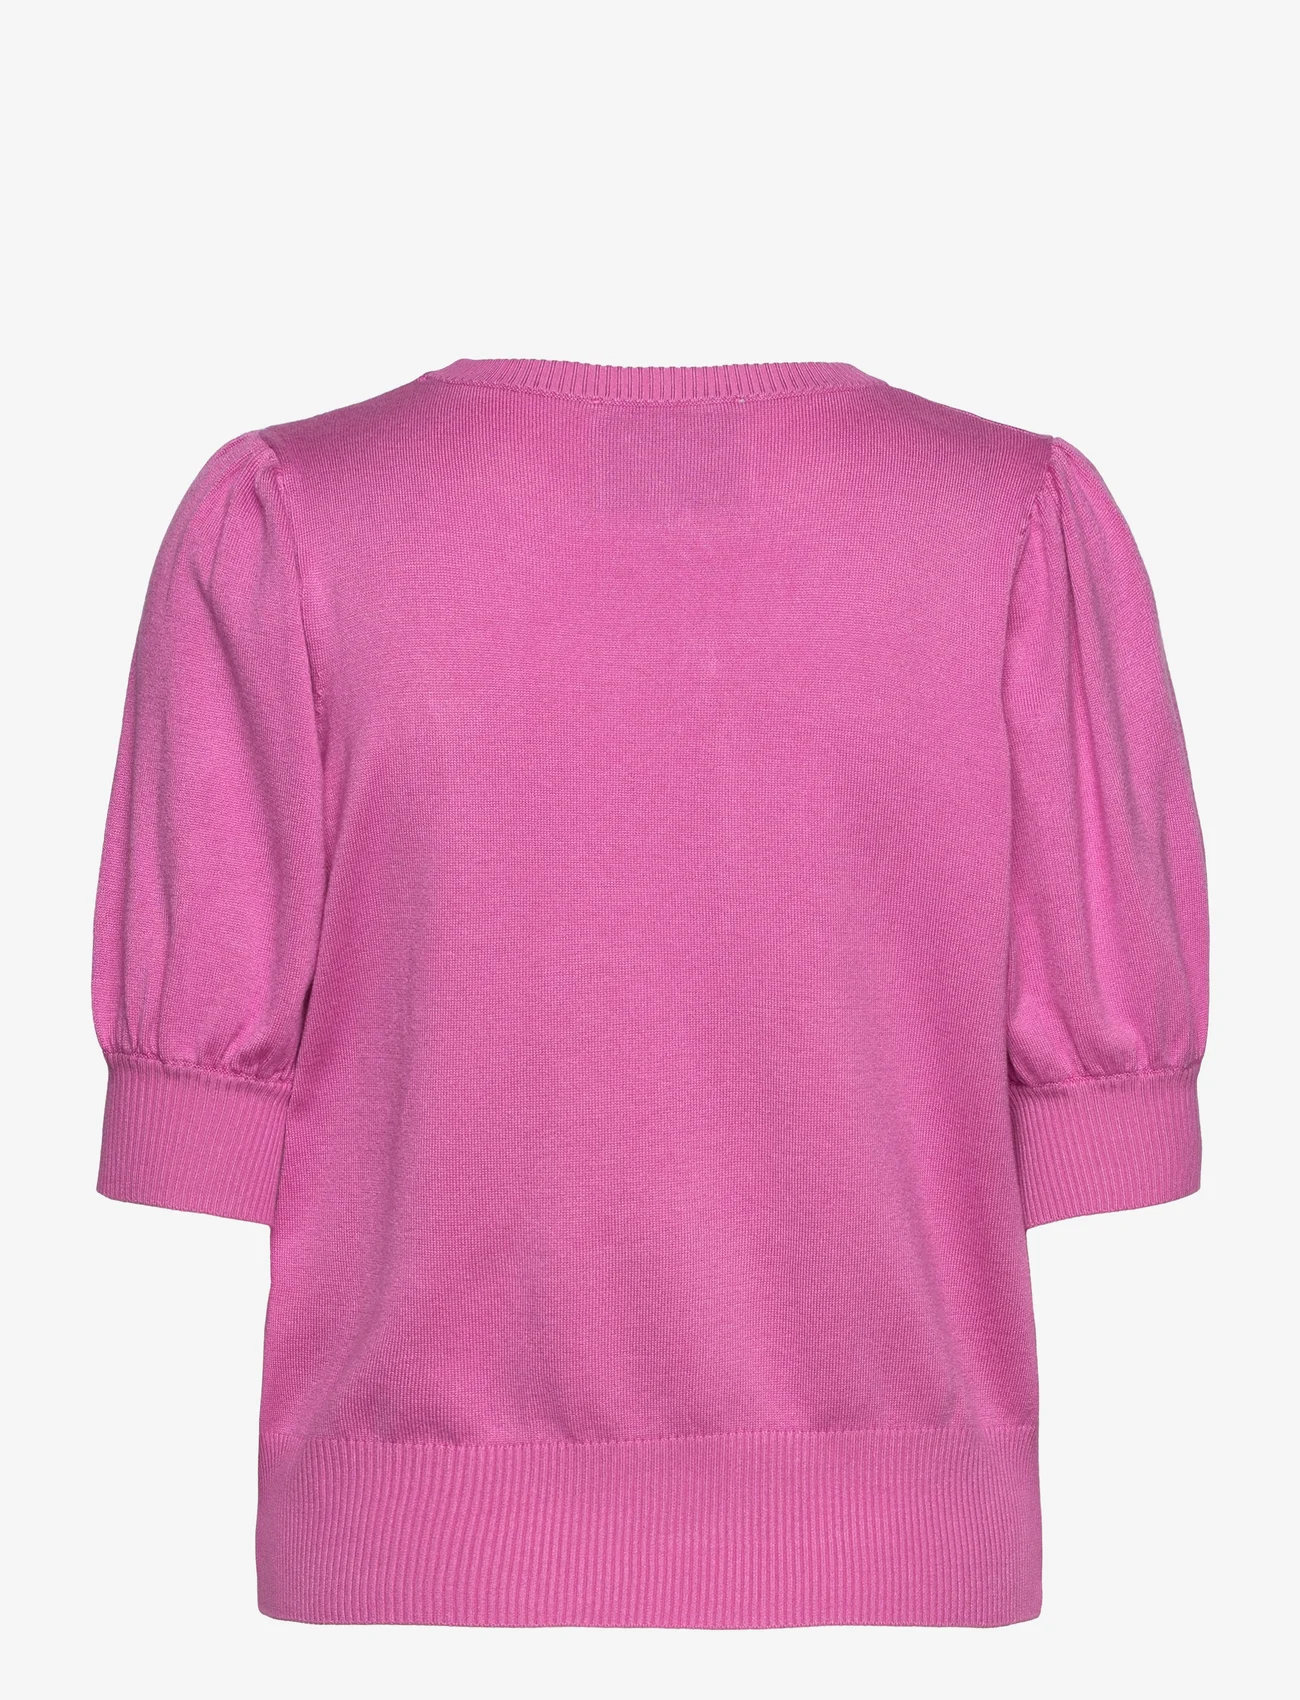 Minus - Liva Strik T-Shirt - sweaters - super pink - 1